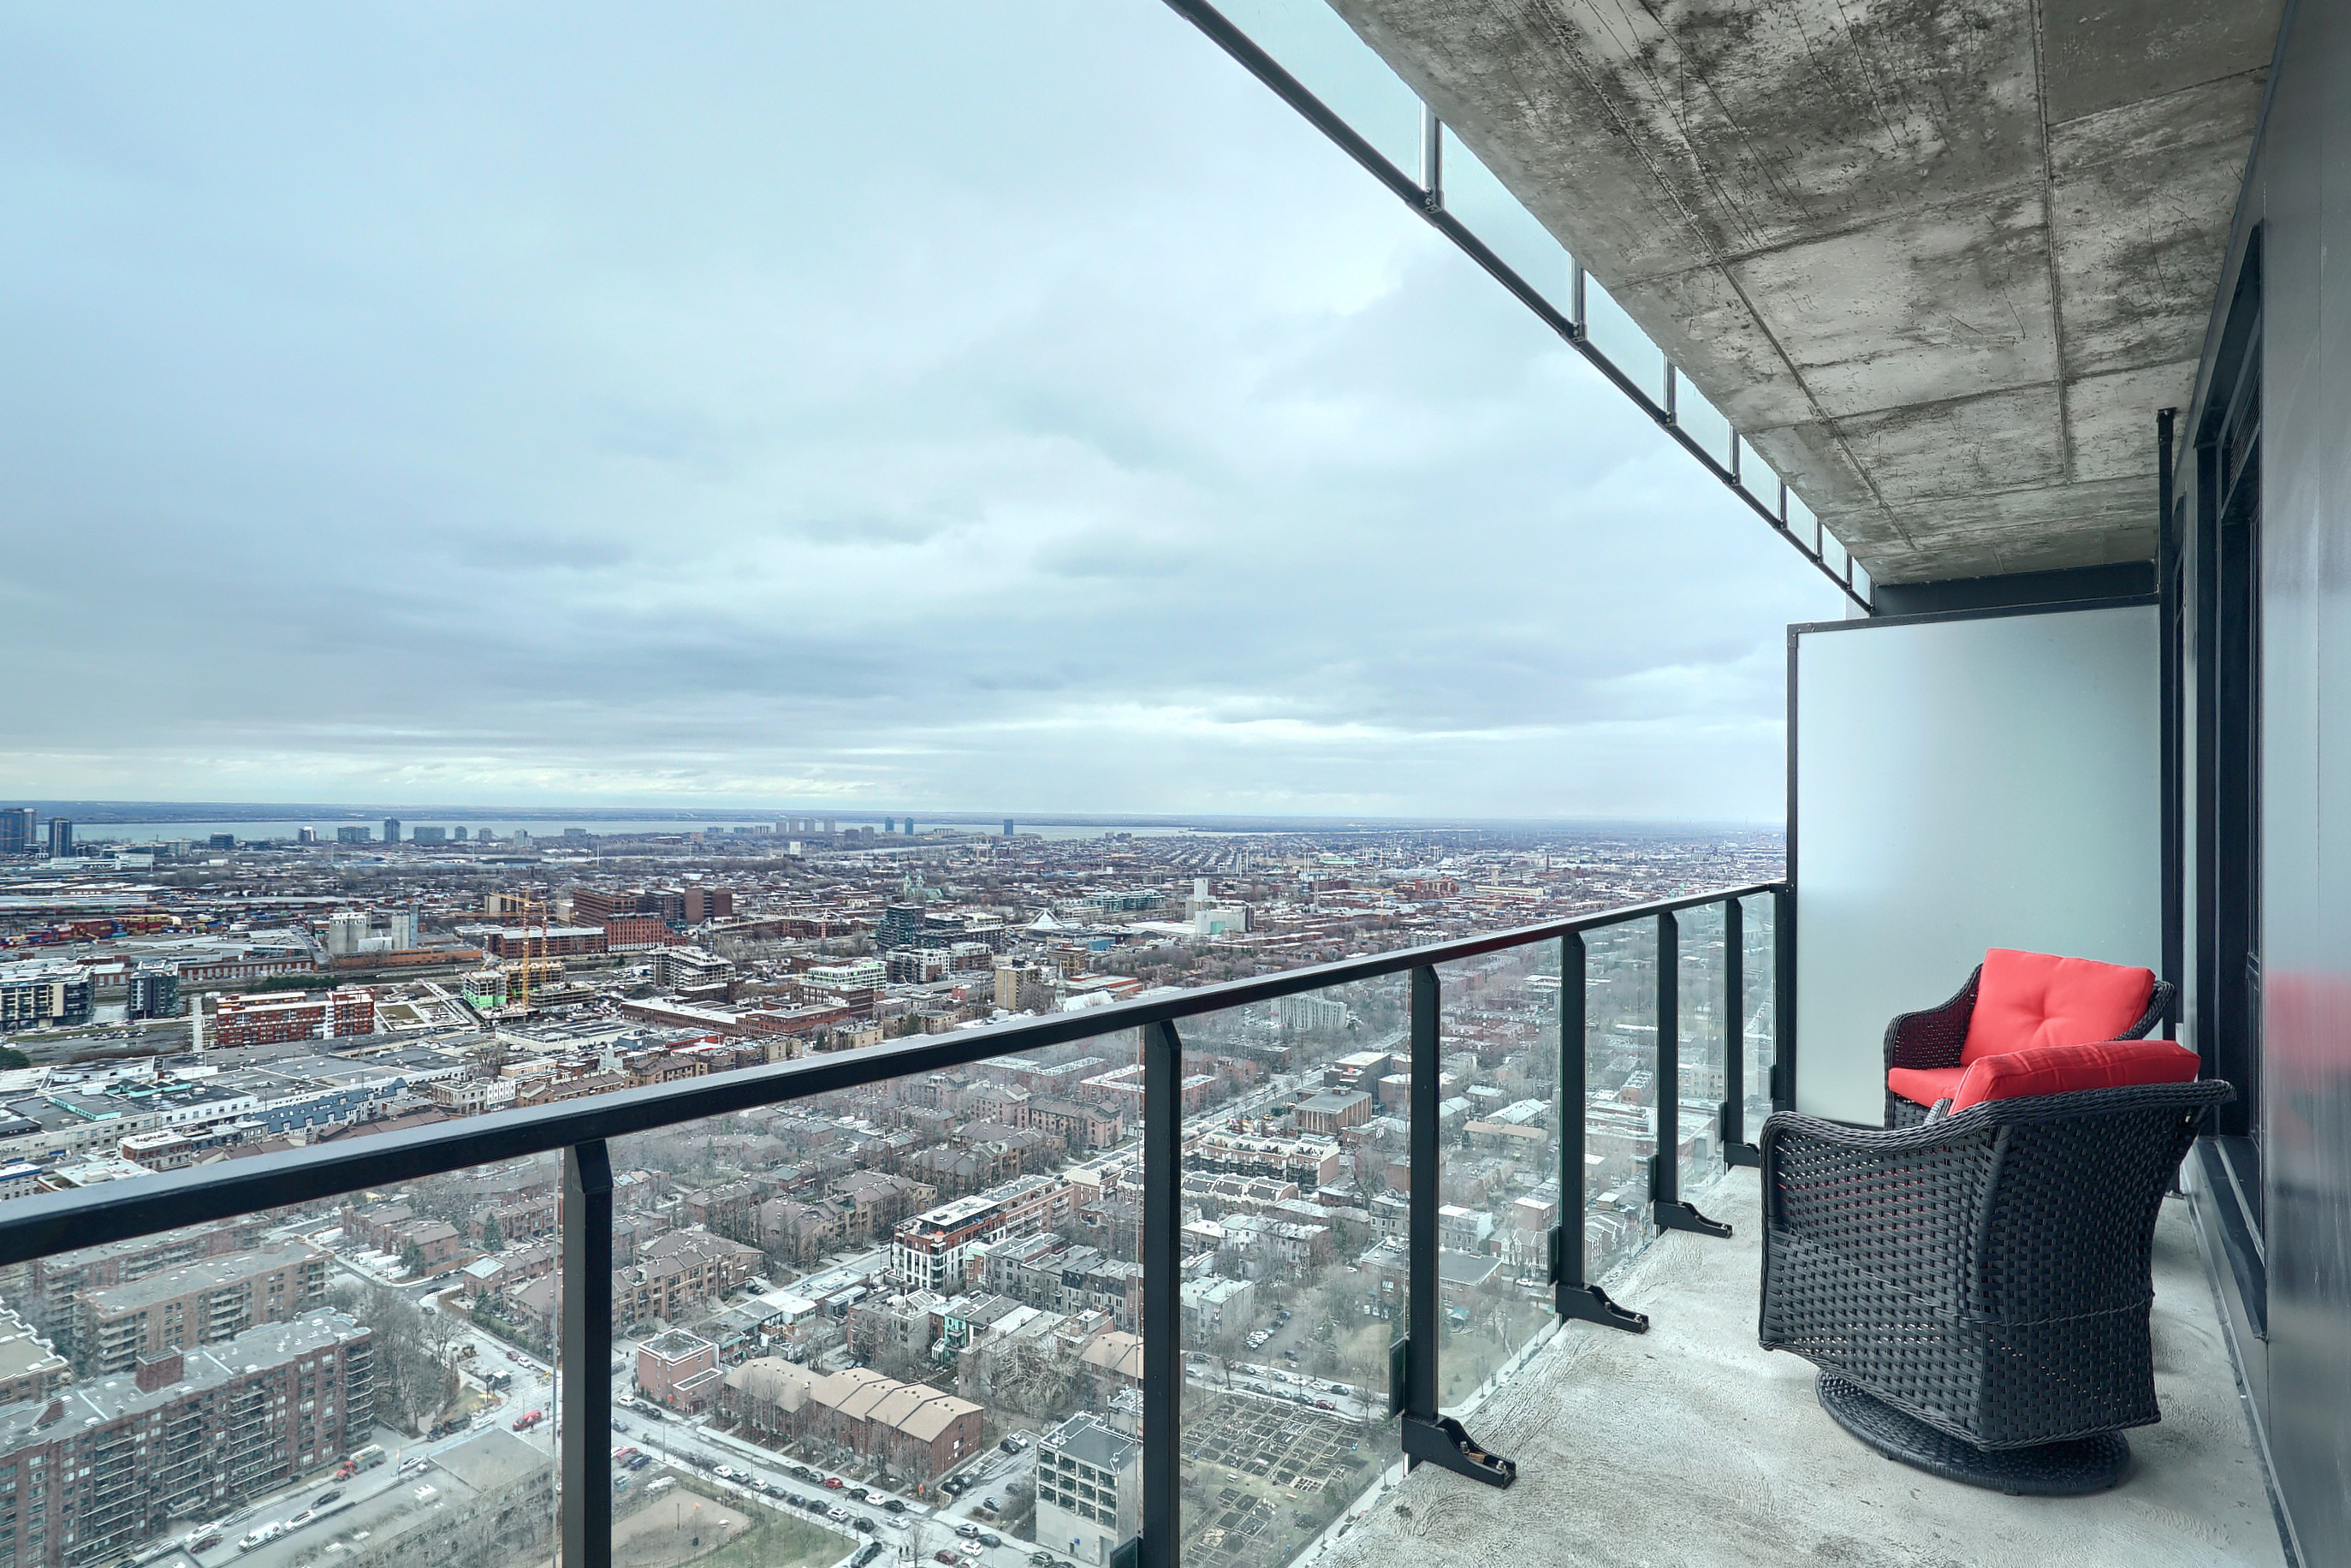 Vue latérale du balcon montrant la balustrade en verre, deux chaises grises design avec des coussins rouges et une vue magnifique sur cette ville depuis cet hébergement exécutif à Montréal